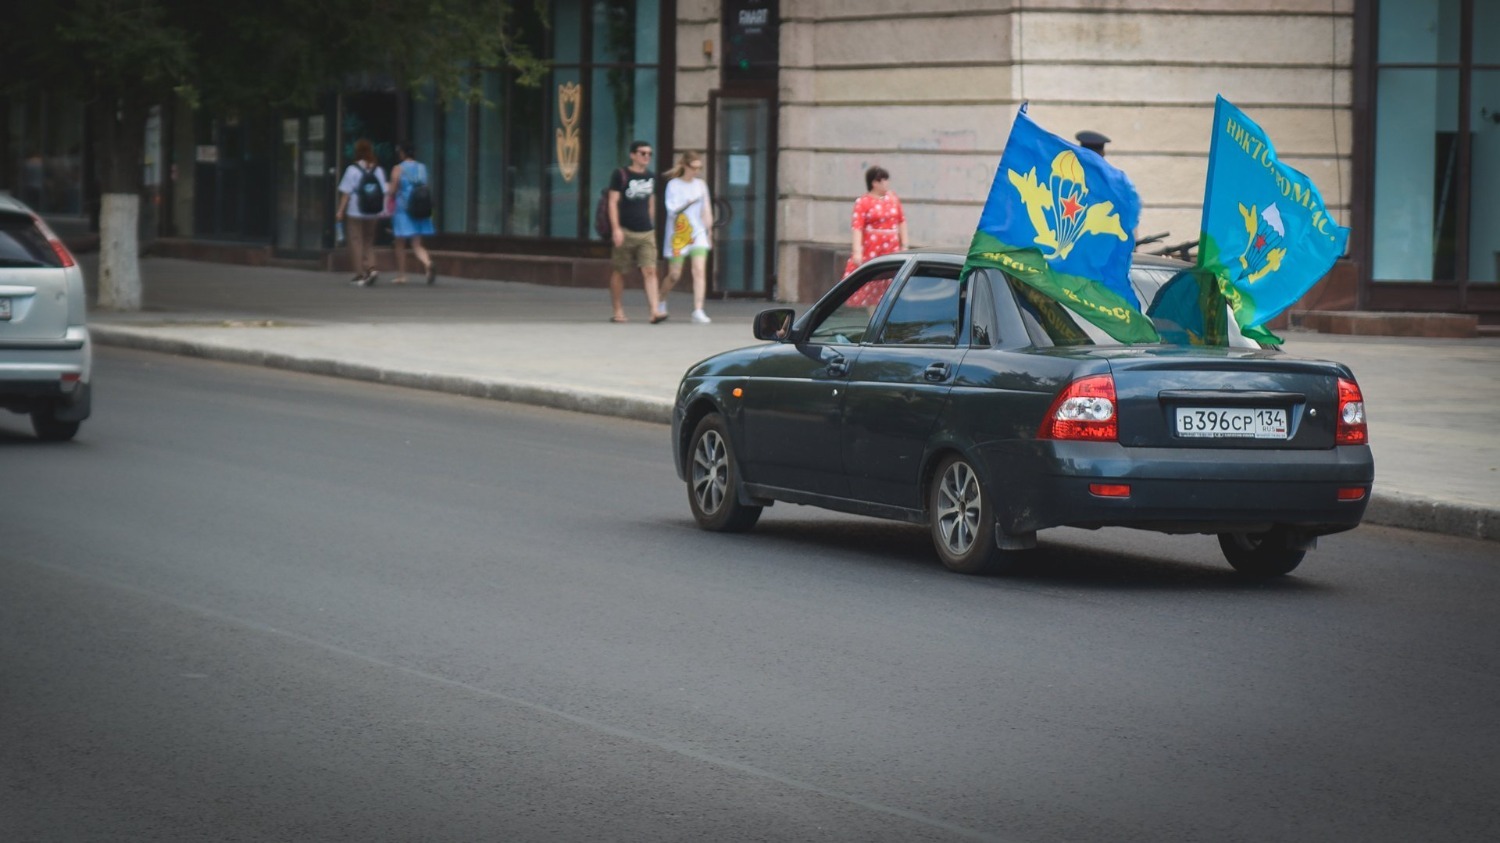 Флаги ВДВ встречаются разве что в центре Волгограда